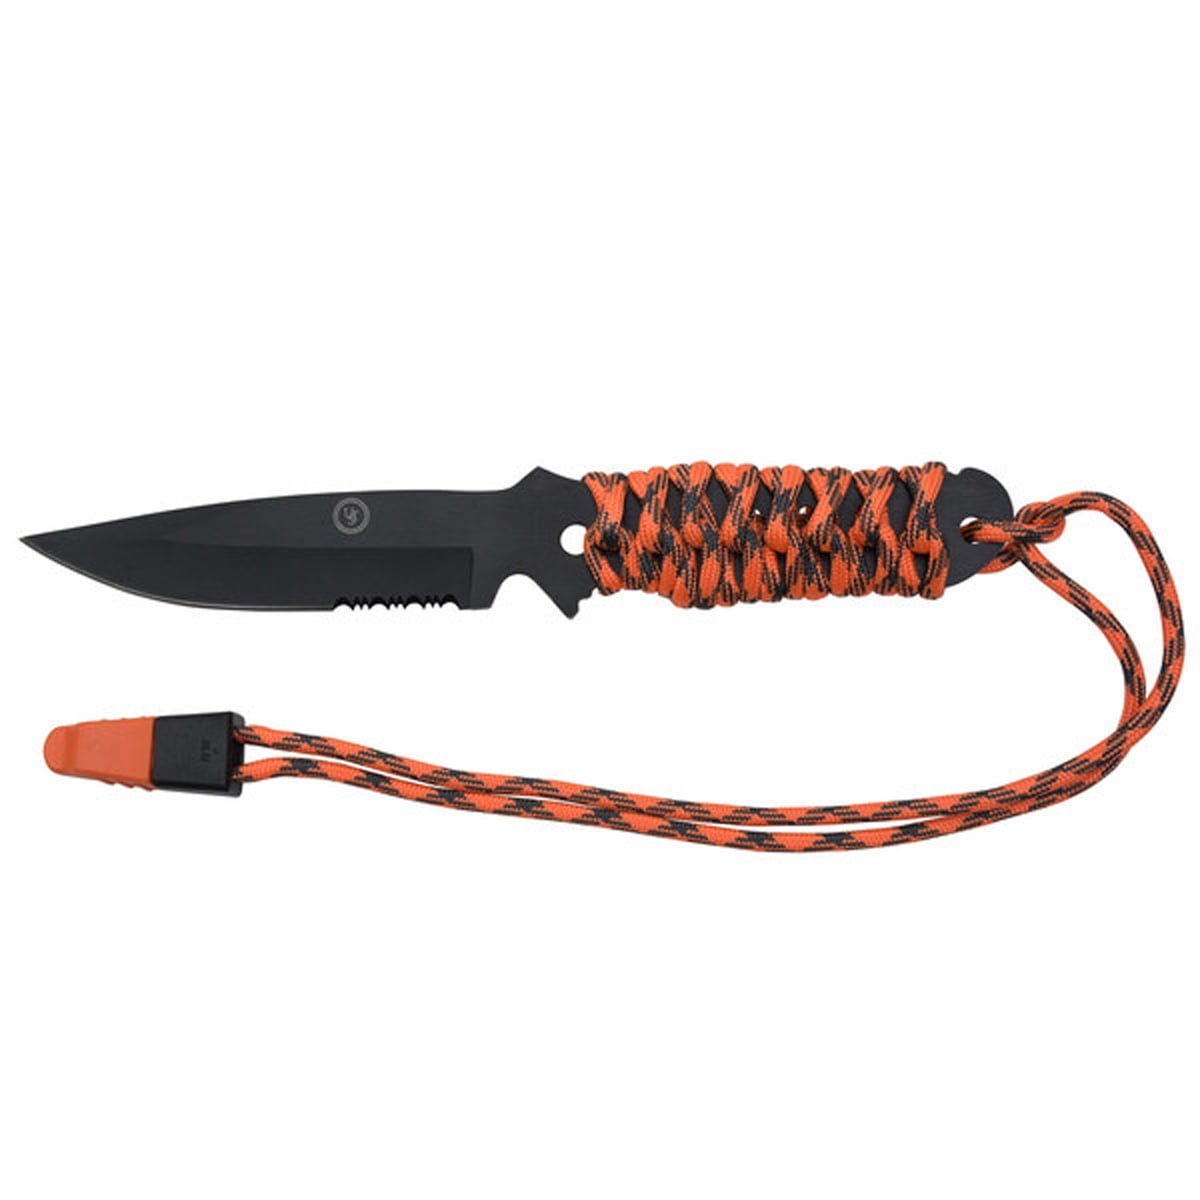 Quickdraw XLR Knife - Insulation Blades - Prazi USA